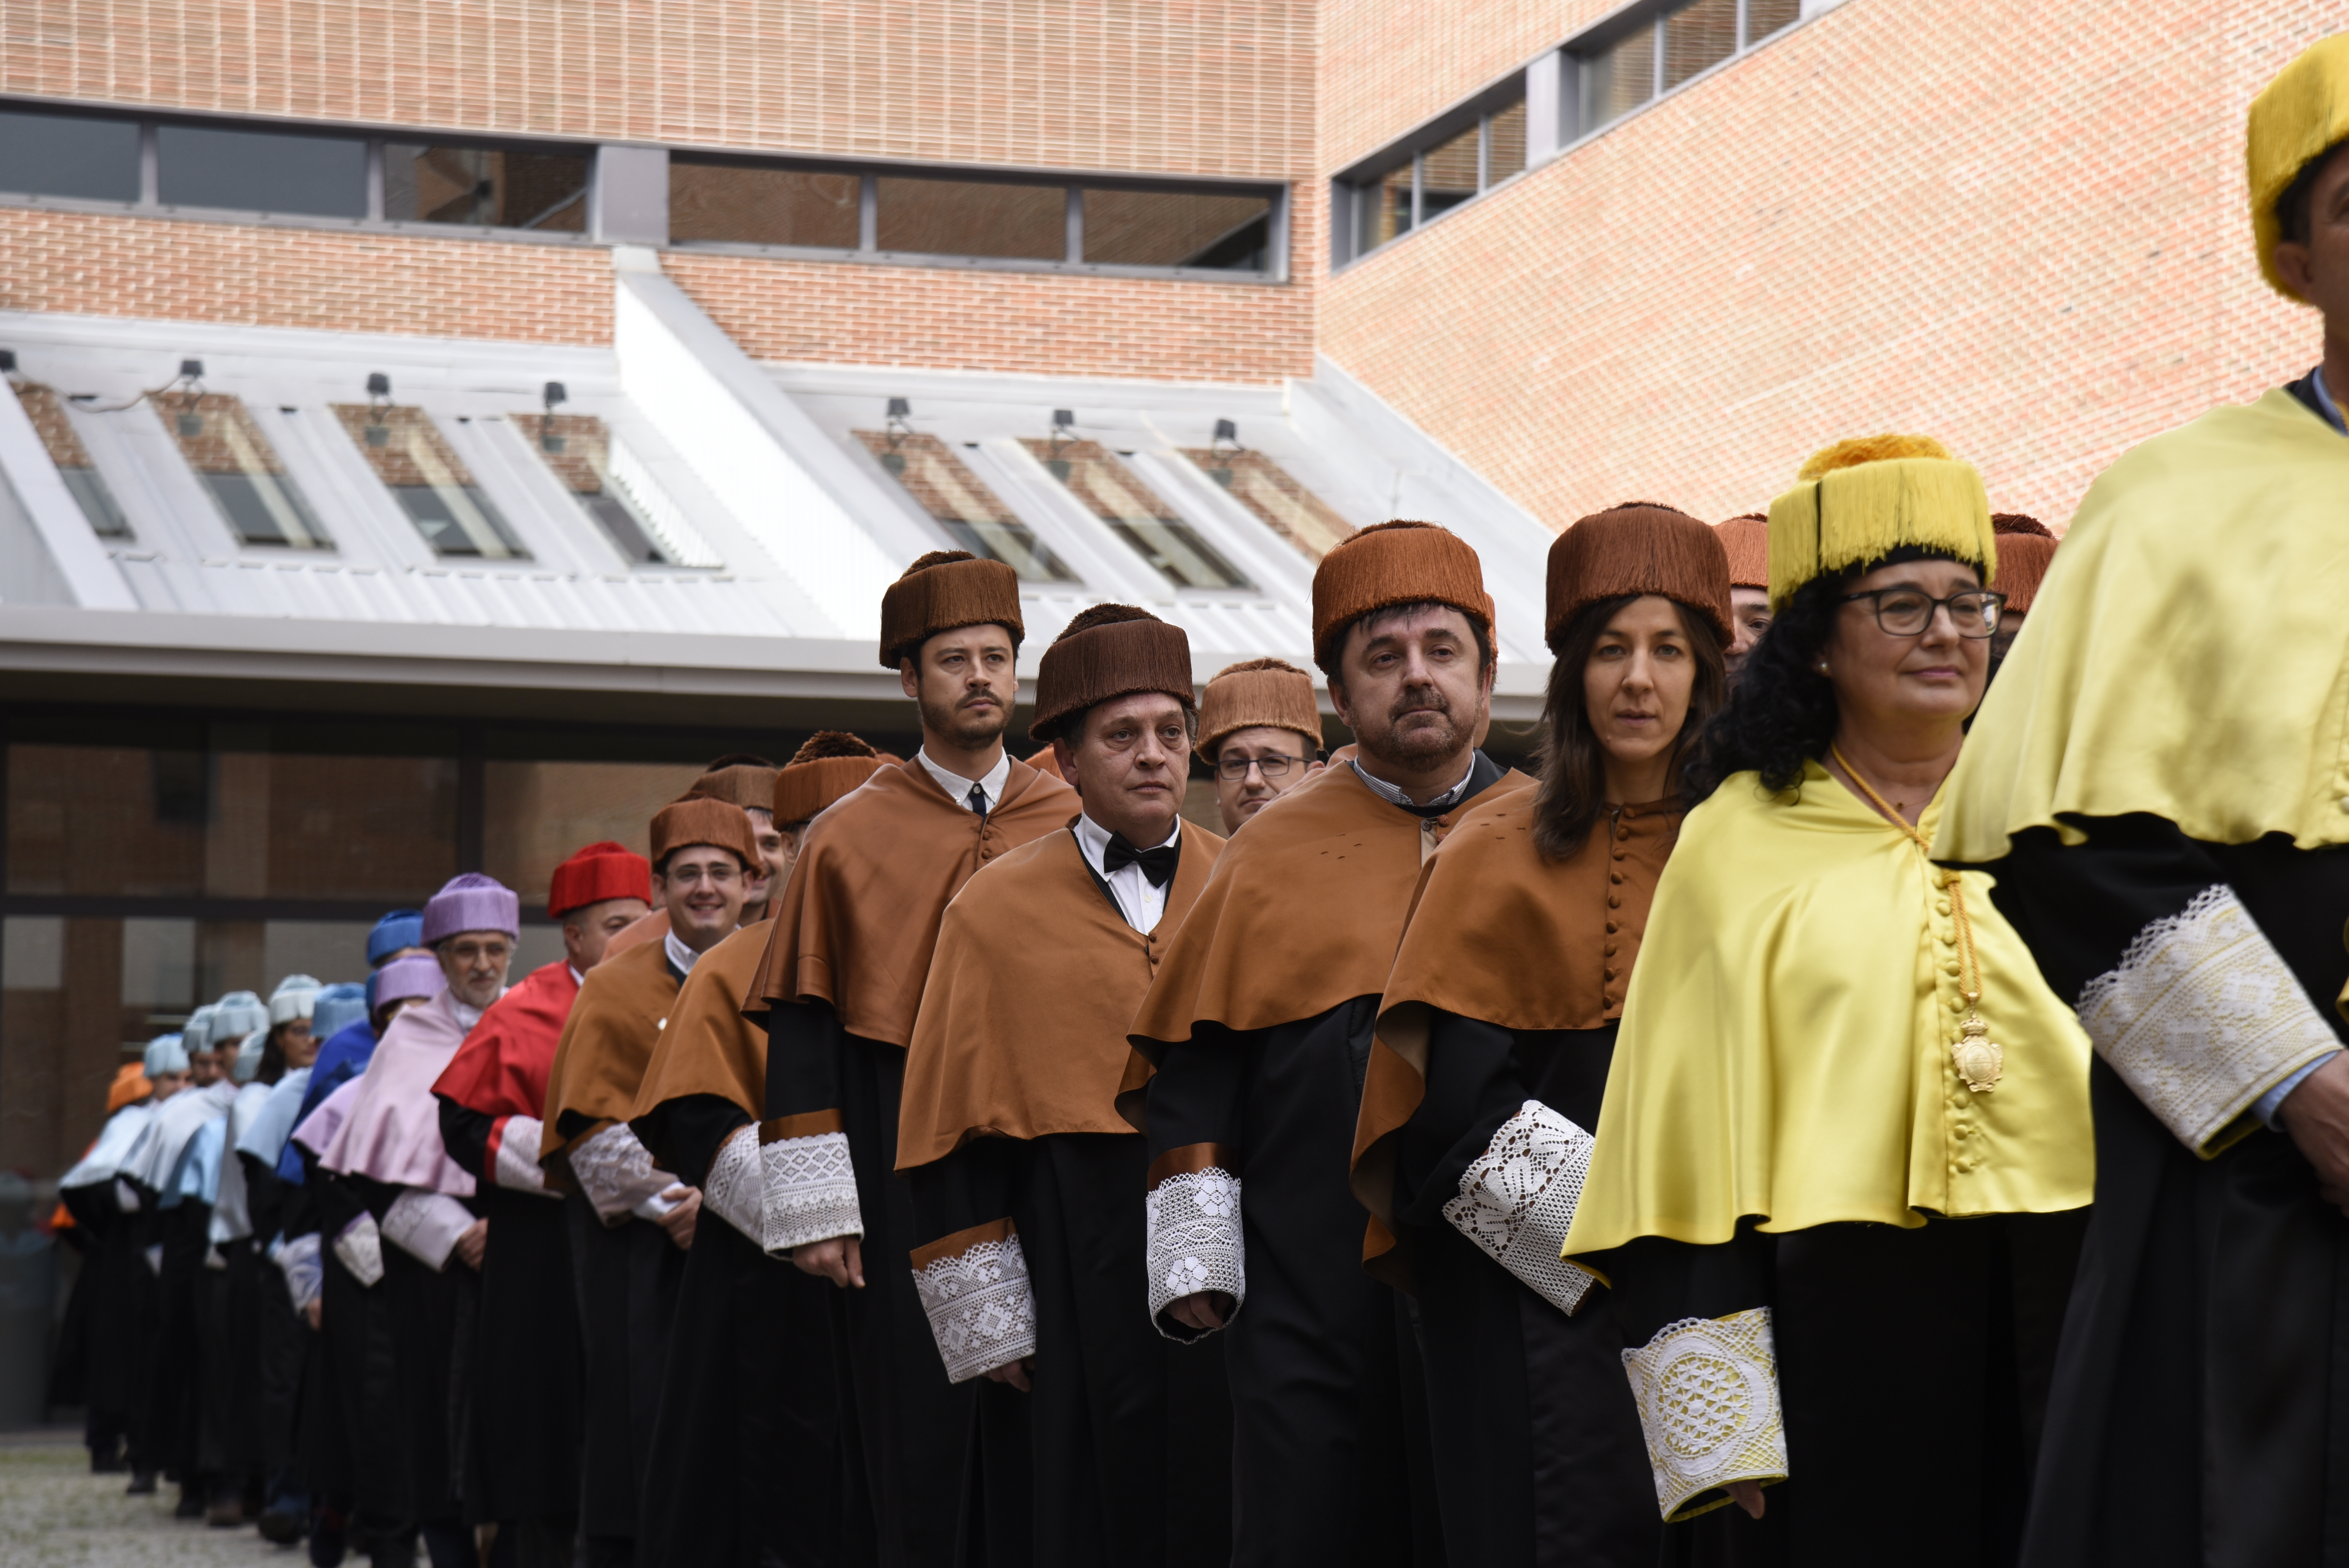 La Universidad de Salamanca conmemora en el Campus de Ávila sus ocho siglos de historia